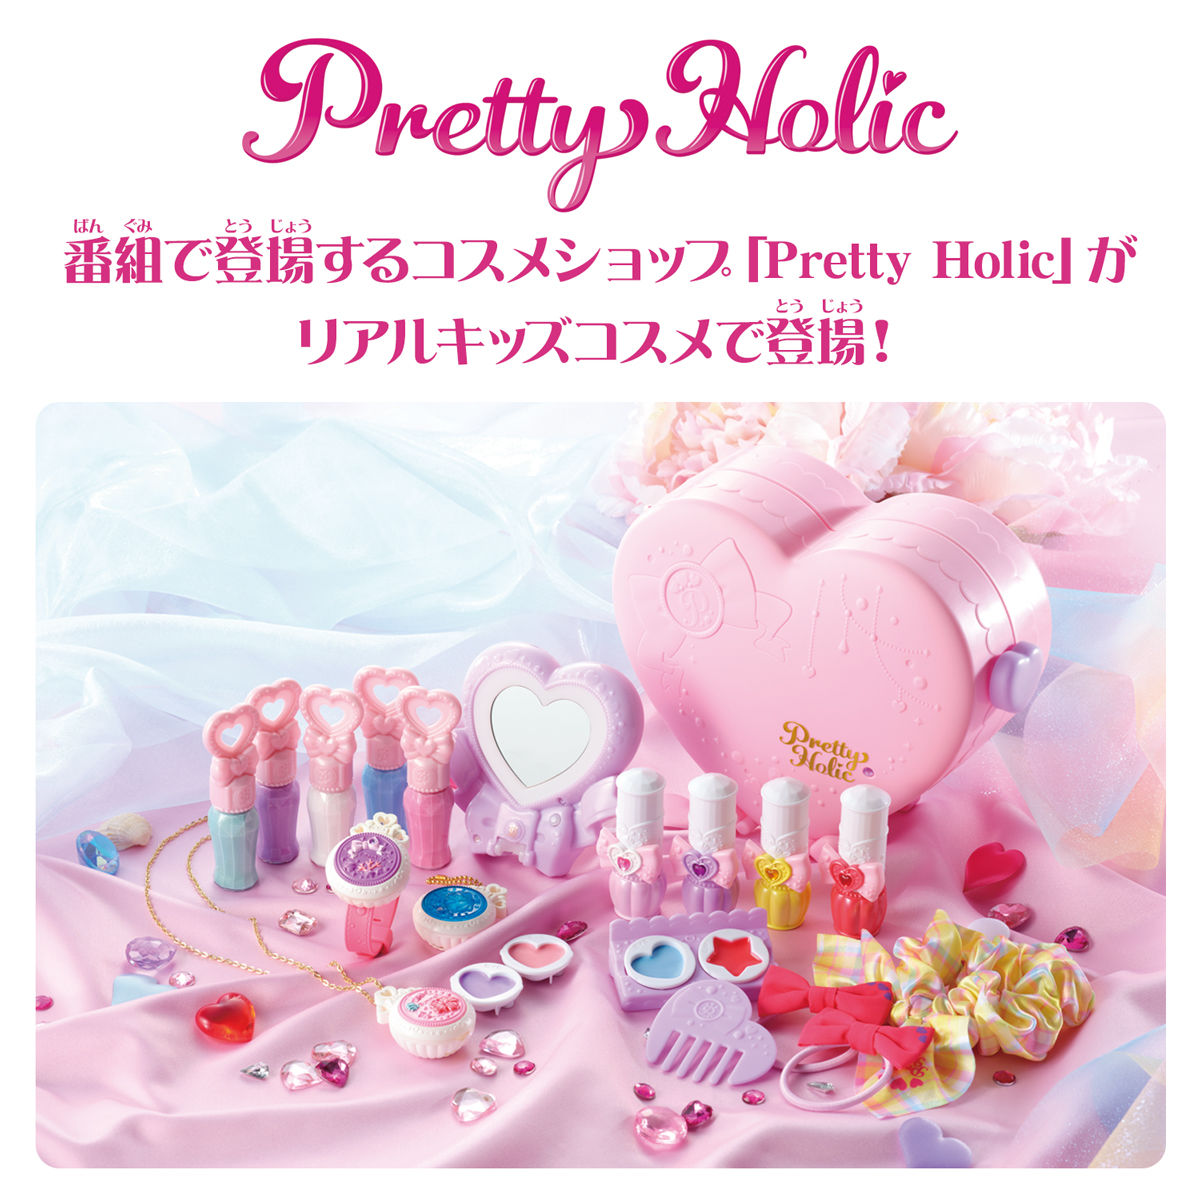 Pretty Holic ハートアイズミラー プリキュアおもちゃウェブ バンダイ公式サイト